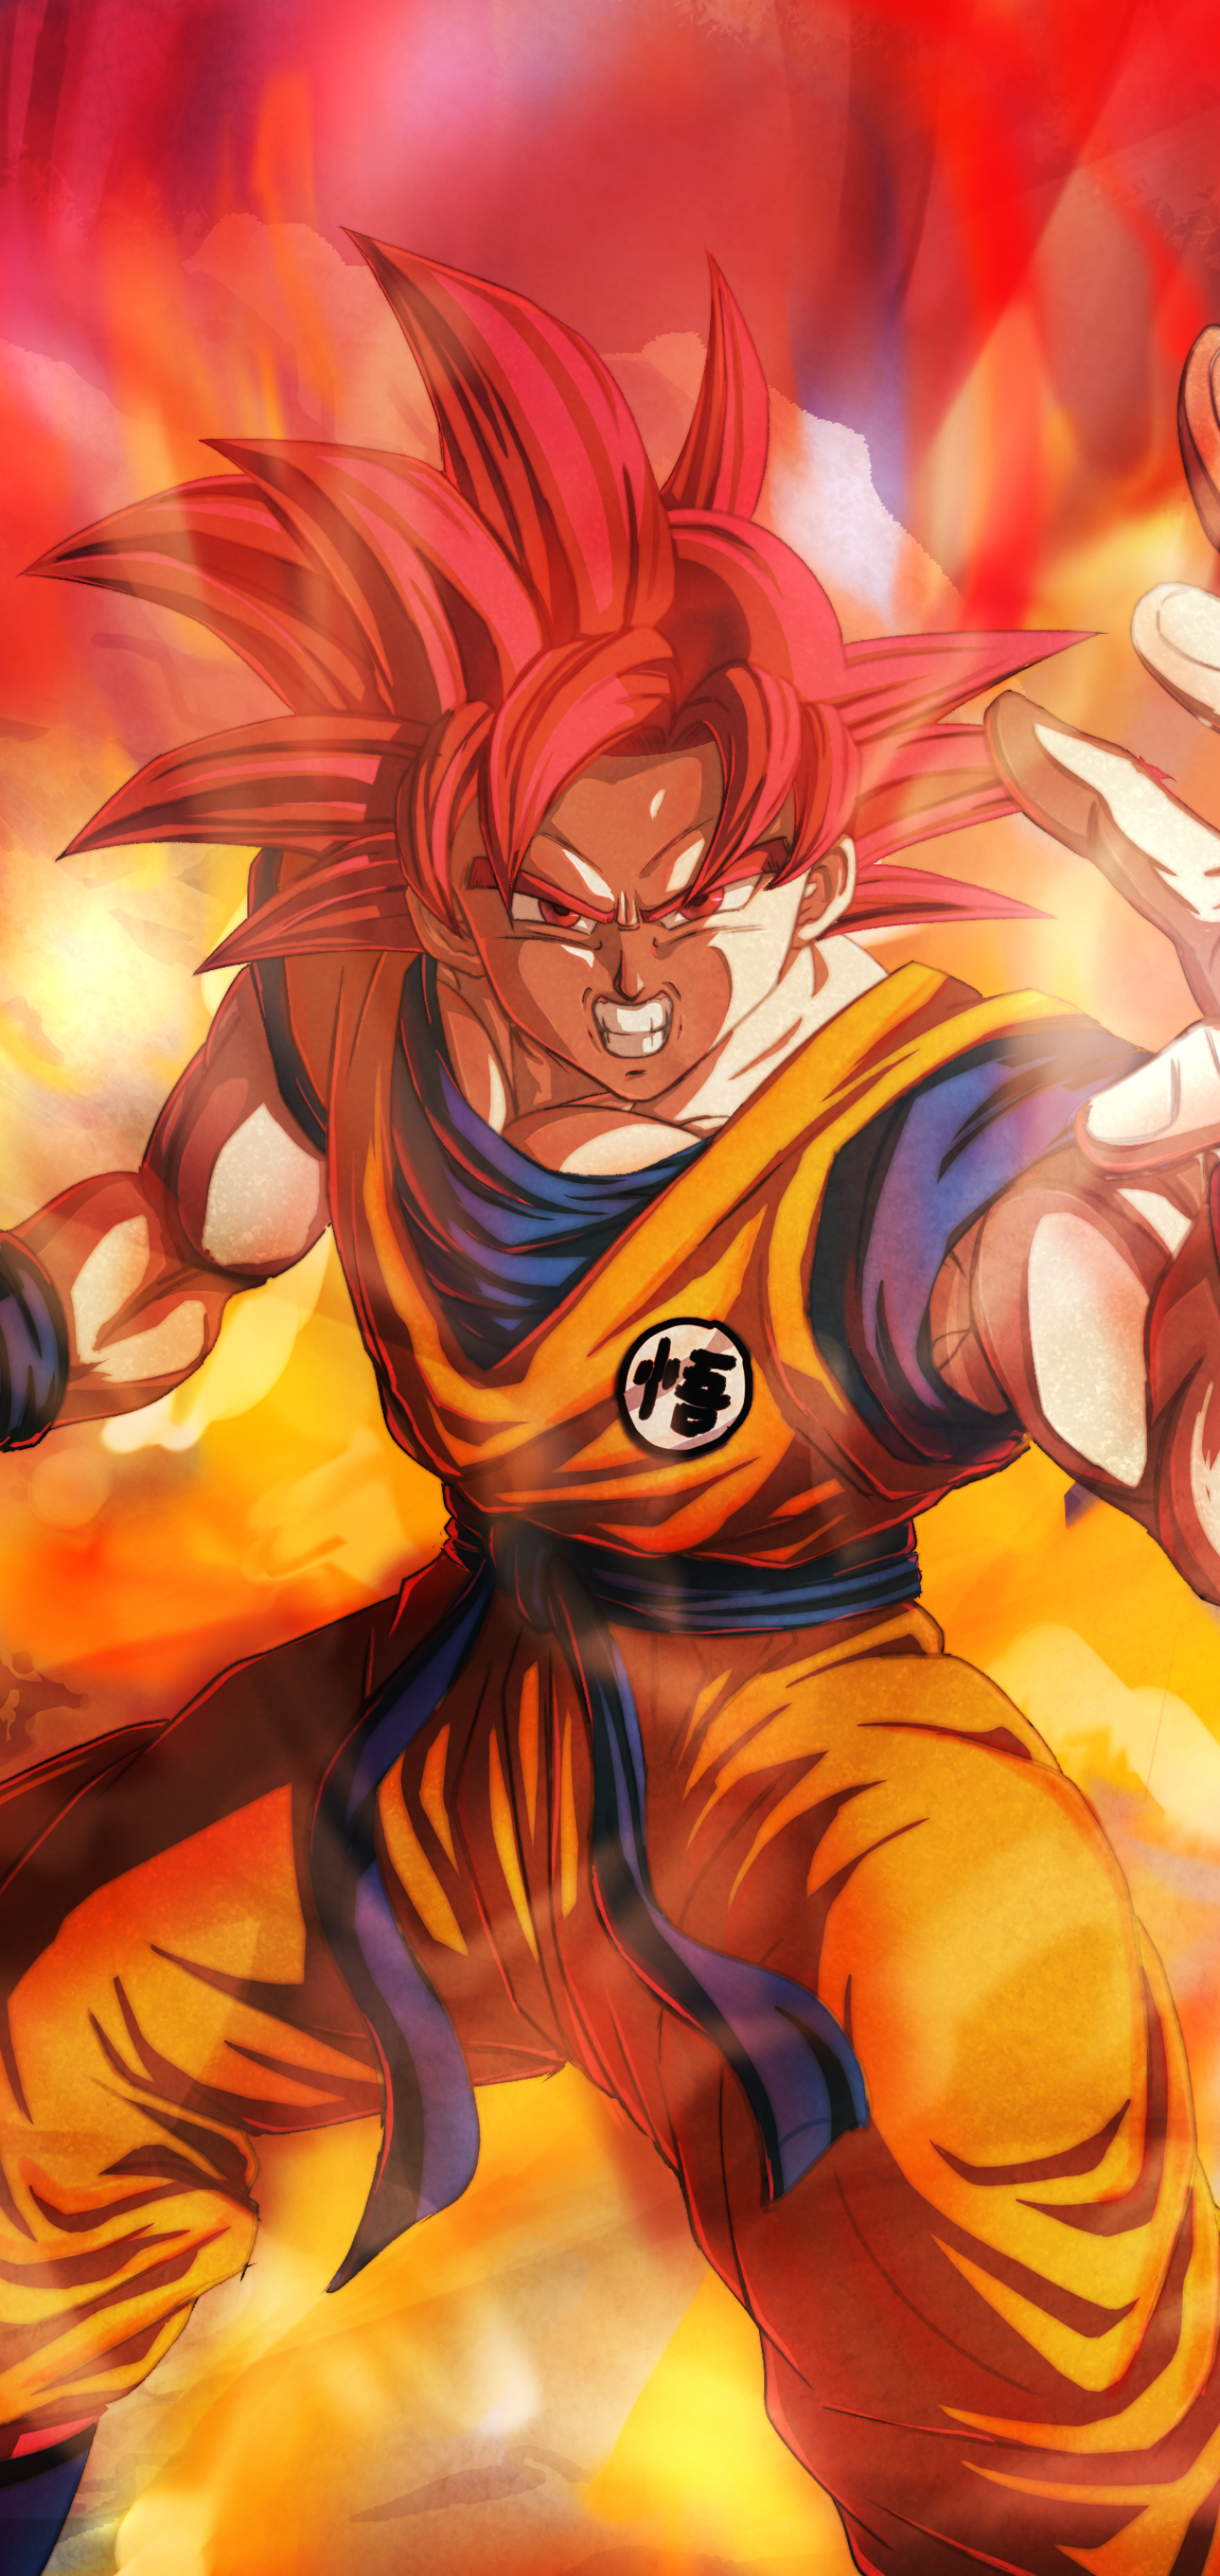 Goku Super Saiyan God Wallpaper Iphone : Goku God Wallpaper Android ...